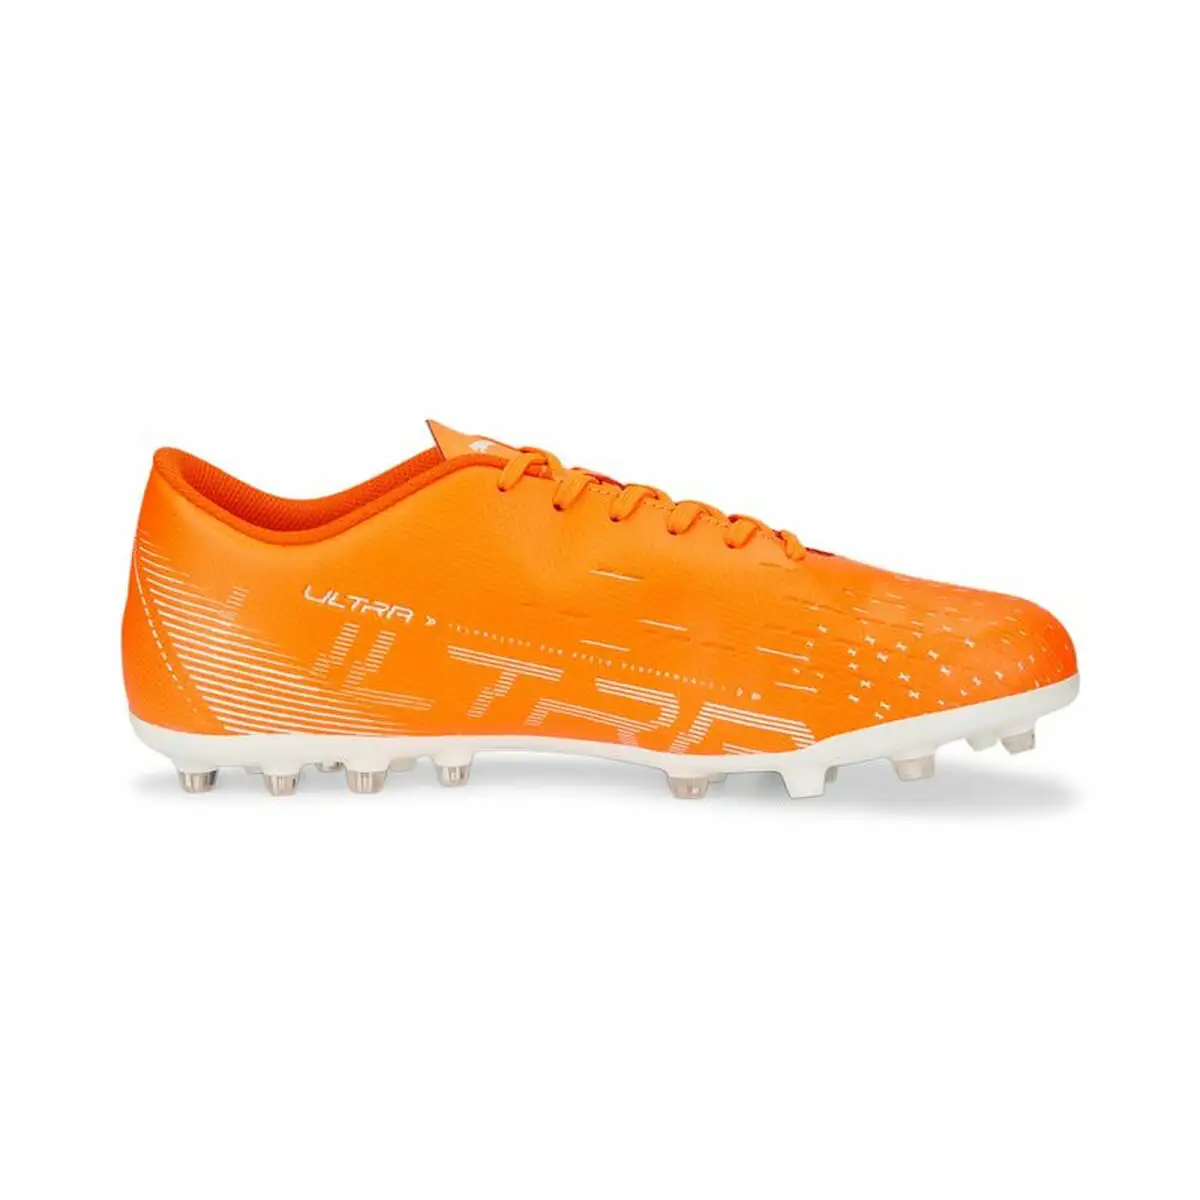 Chaussures de football pour adultes puma ultra play mg orange unisexe_6209. DIAYTAR SENEGAL - L'Art de Choisir, l'Art de Vivre. Explorez notre univers de produits soigneusement sélectionnés pour vous offrir une expérience shopping riche et gratifiante.